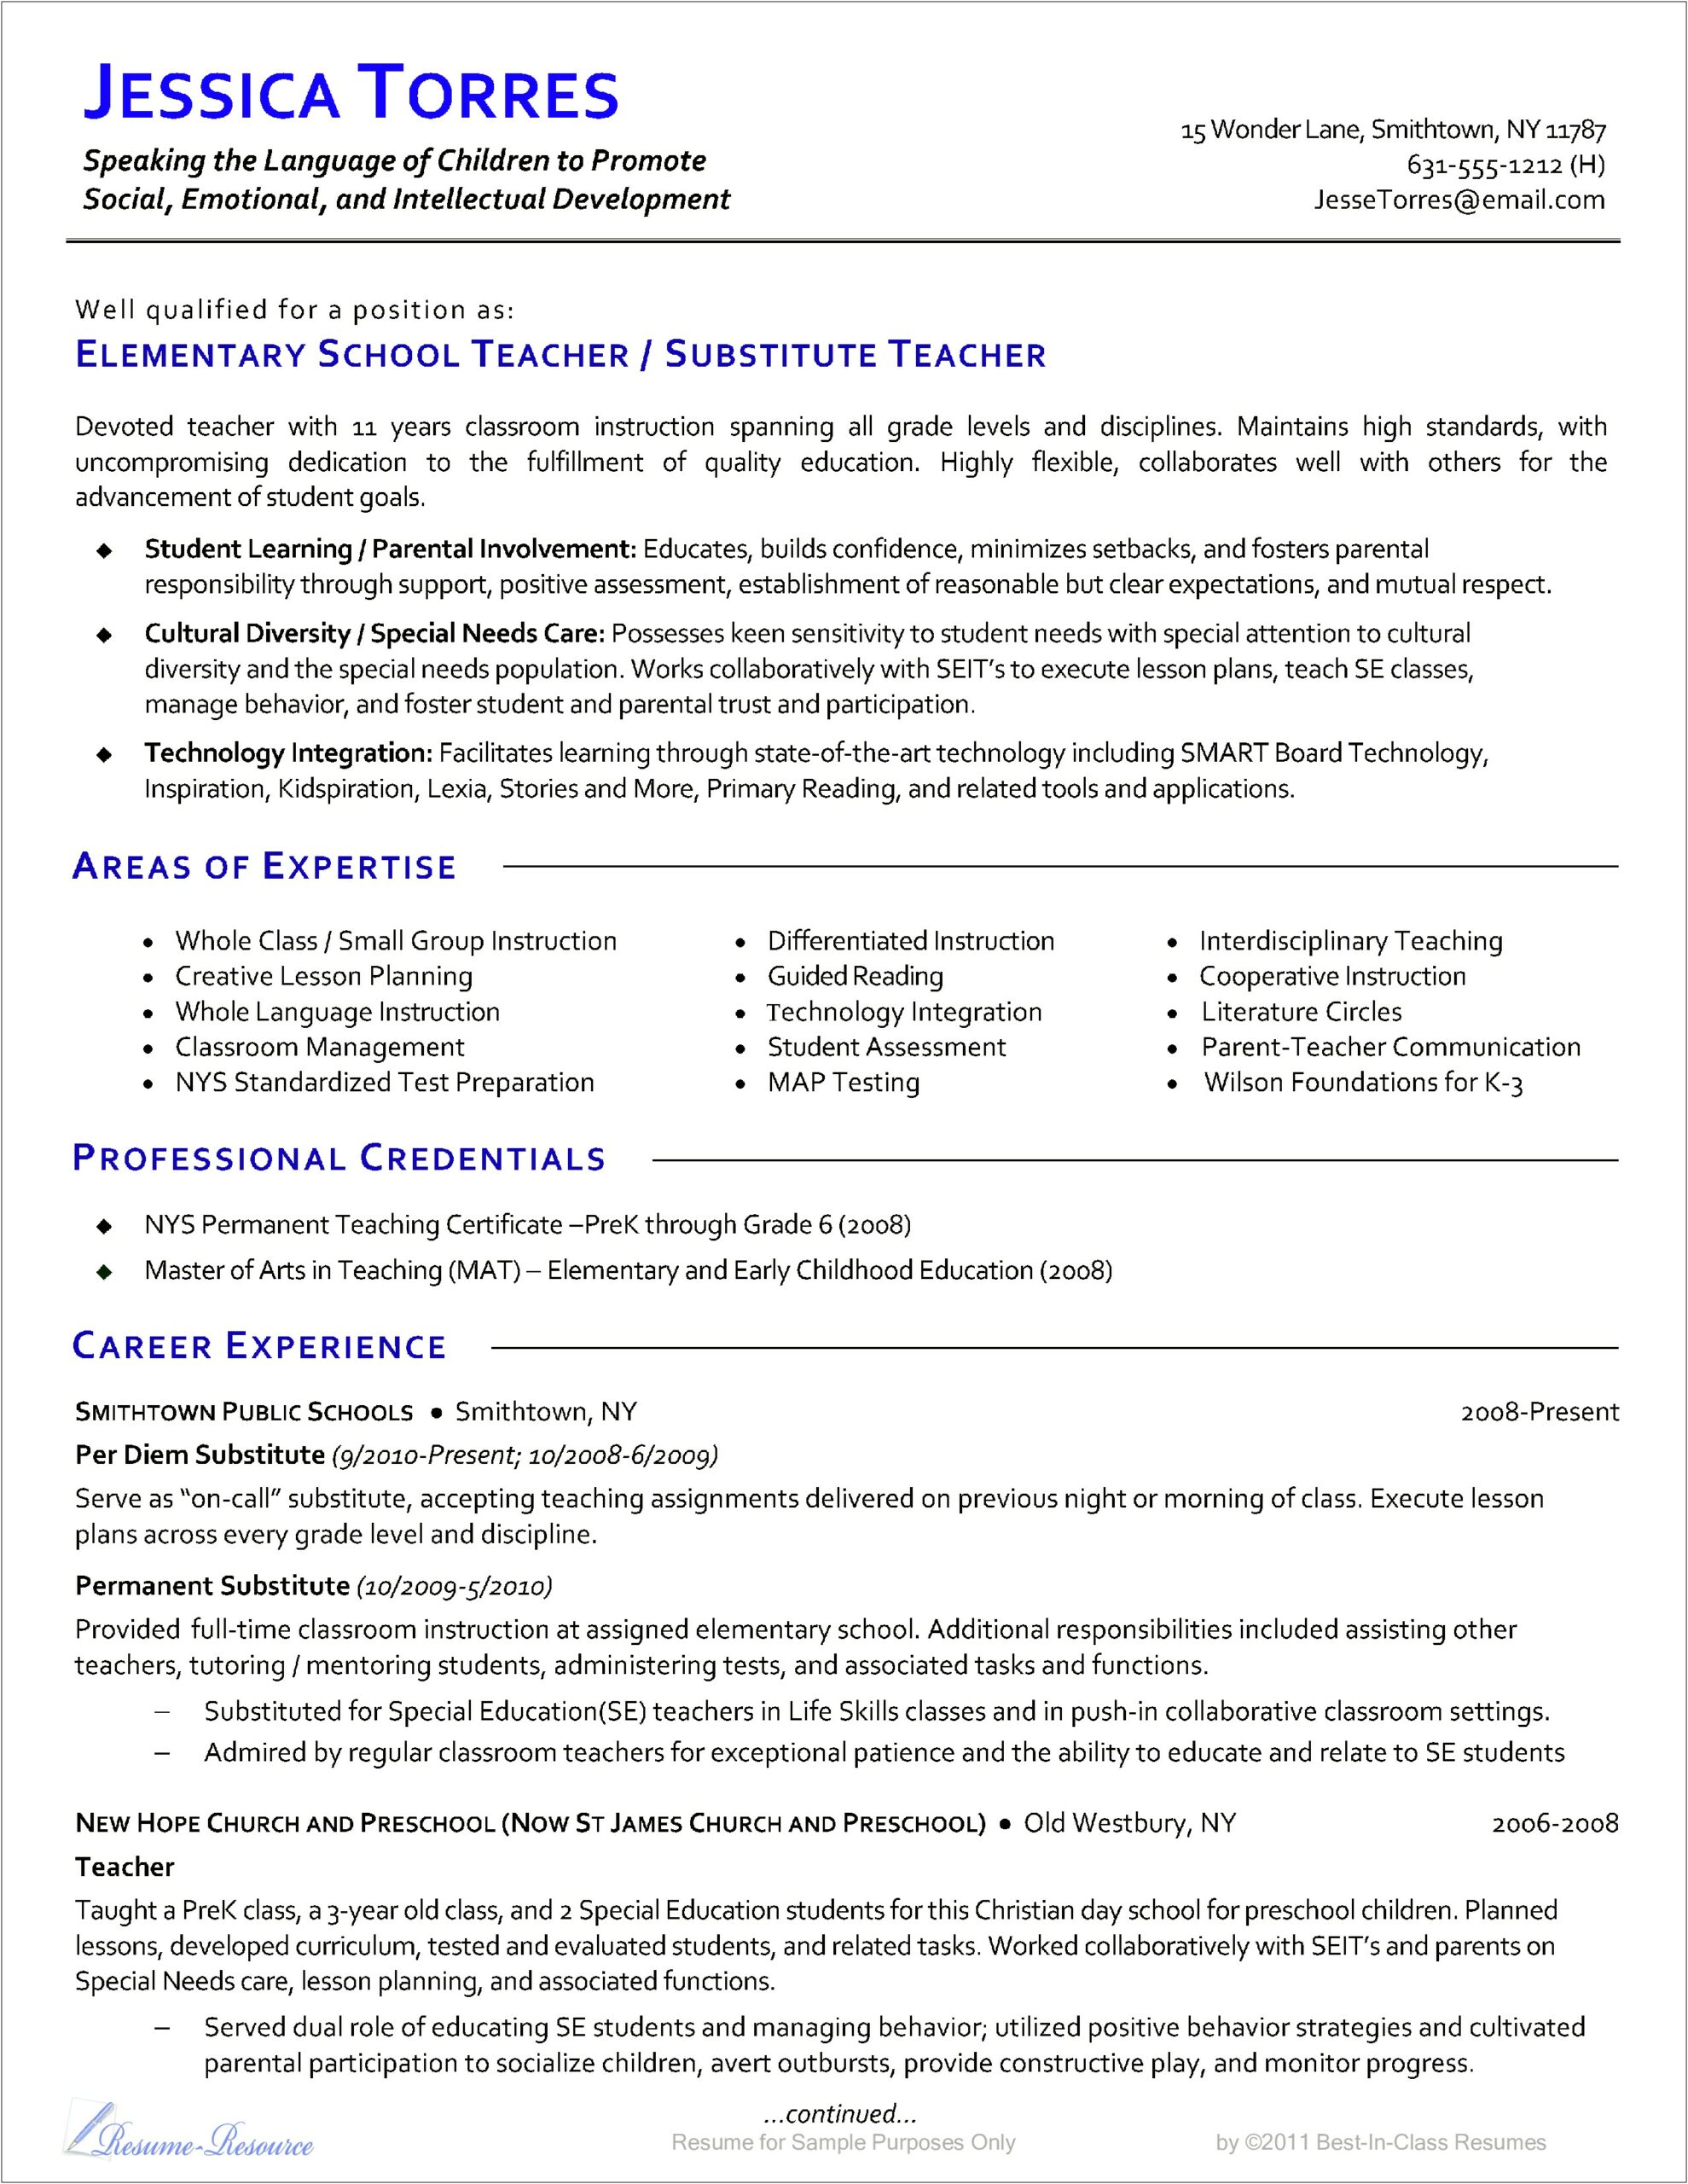 Elementary School Teacher Job Description For Resume